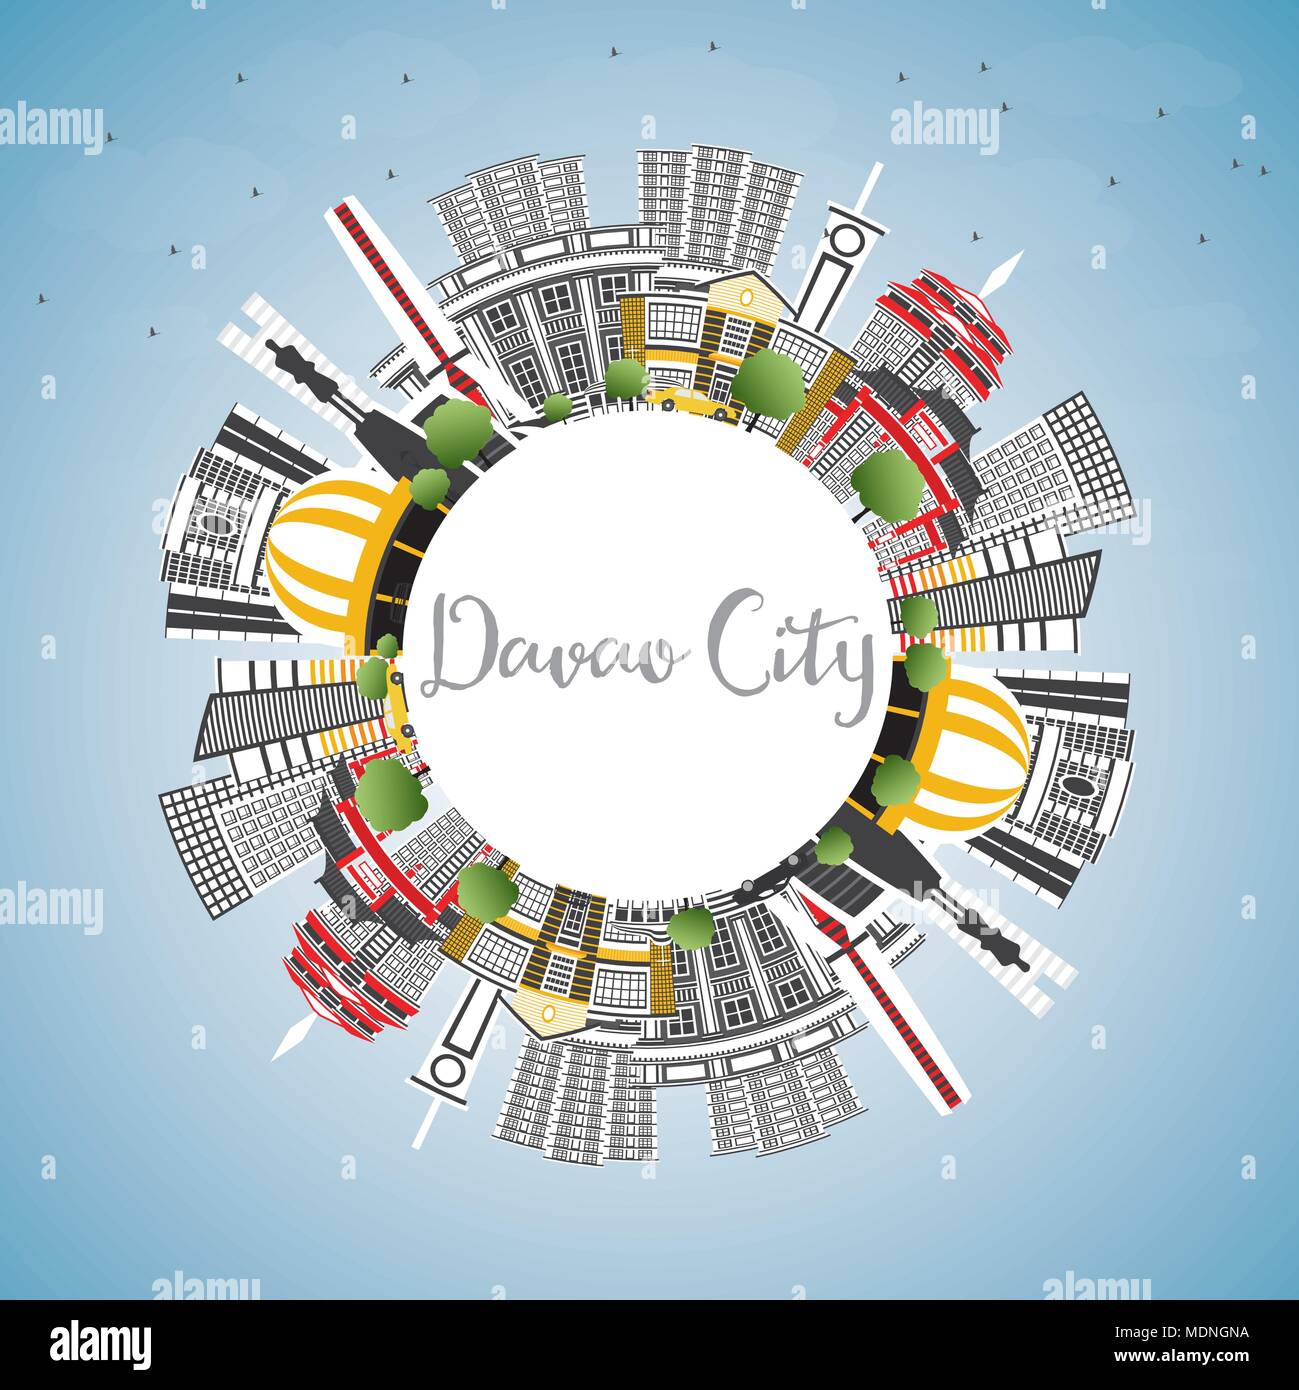 Davao City Philippines Skyline avec bâtiments gris, ciel bleu et copier l'espace. Vector Illustration. Les voyages d'affaires et tourisme Illustration Illustration de Vecteur